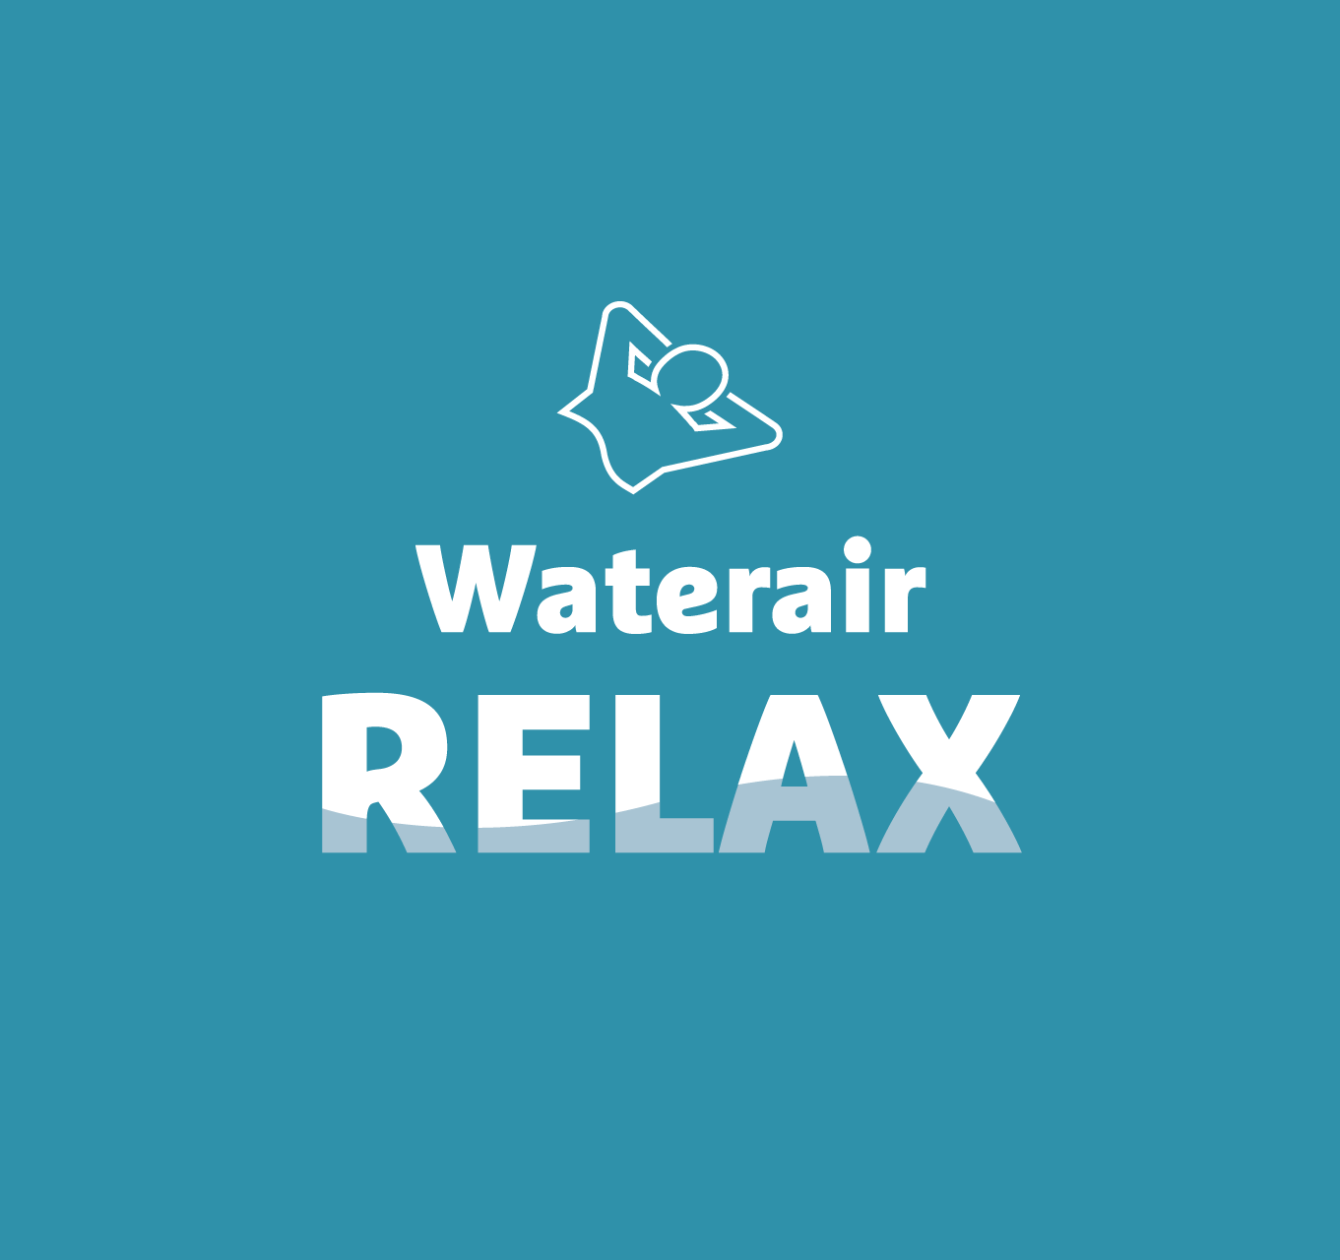 Waterair Relax